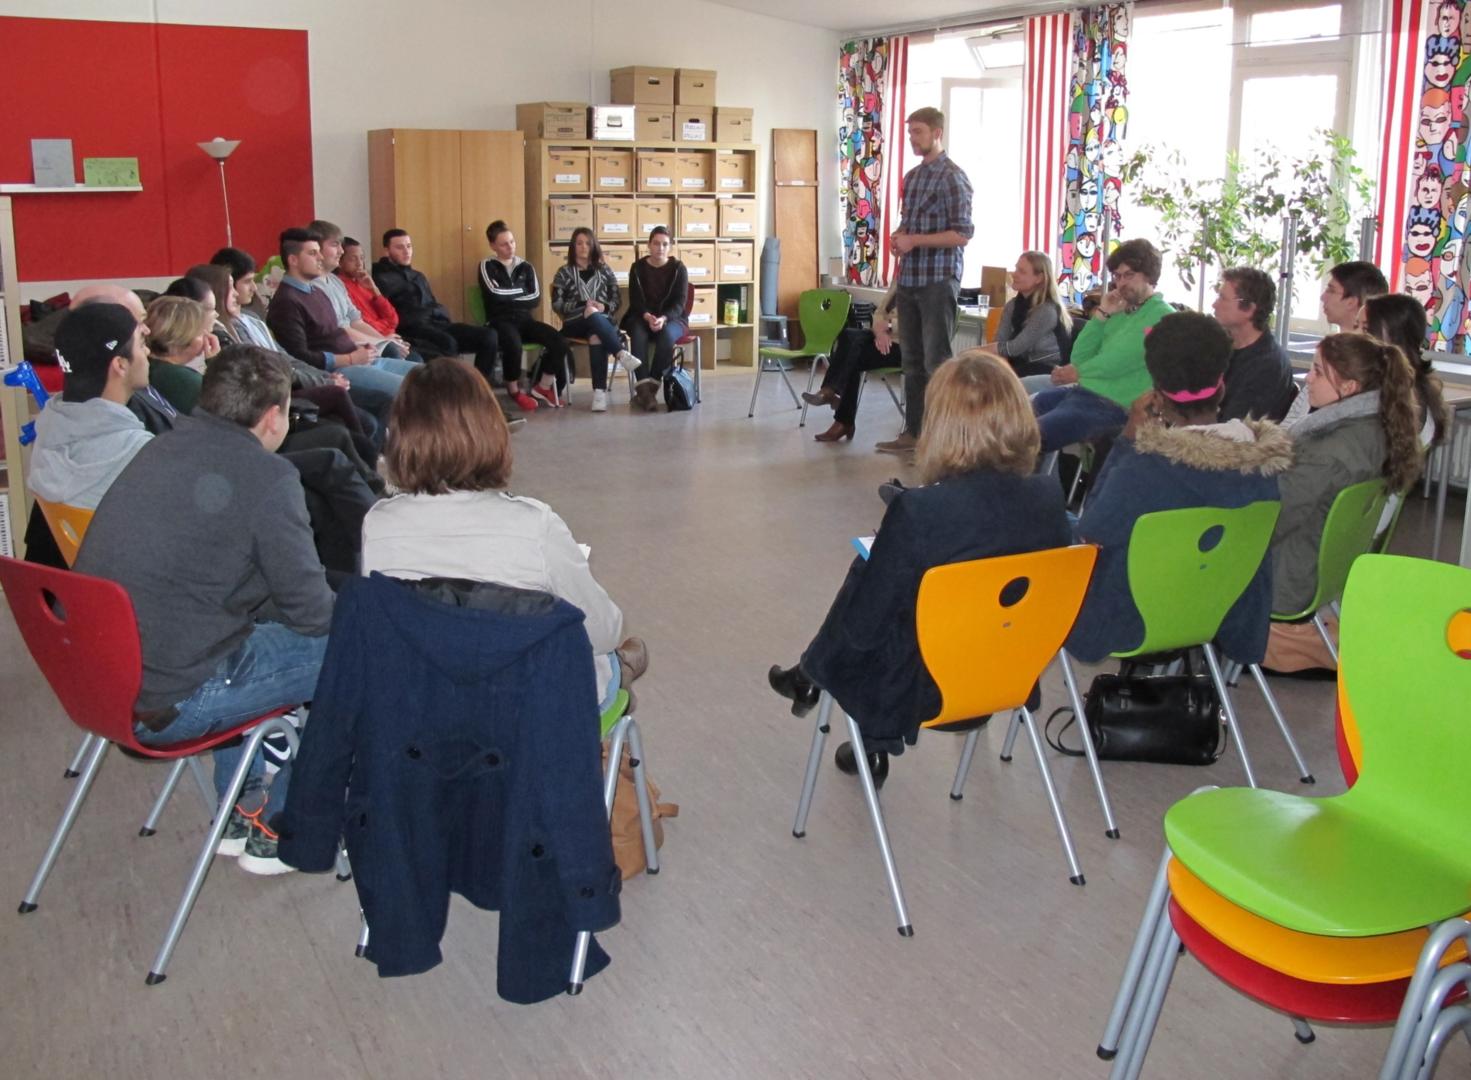 Großes Interesse von Jugendlichen bei einer Auftaktveranstaltung zur Aktion in der Schule (c) Bernd Geide